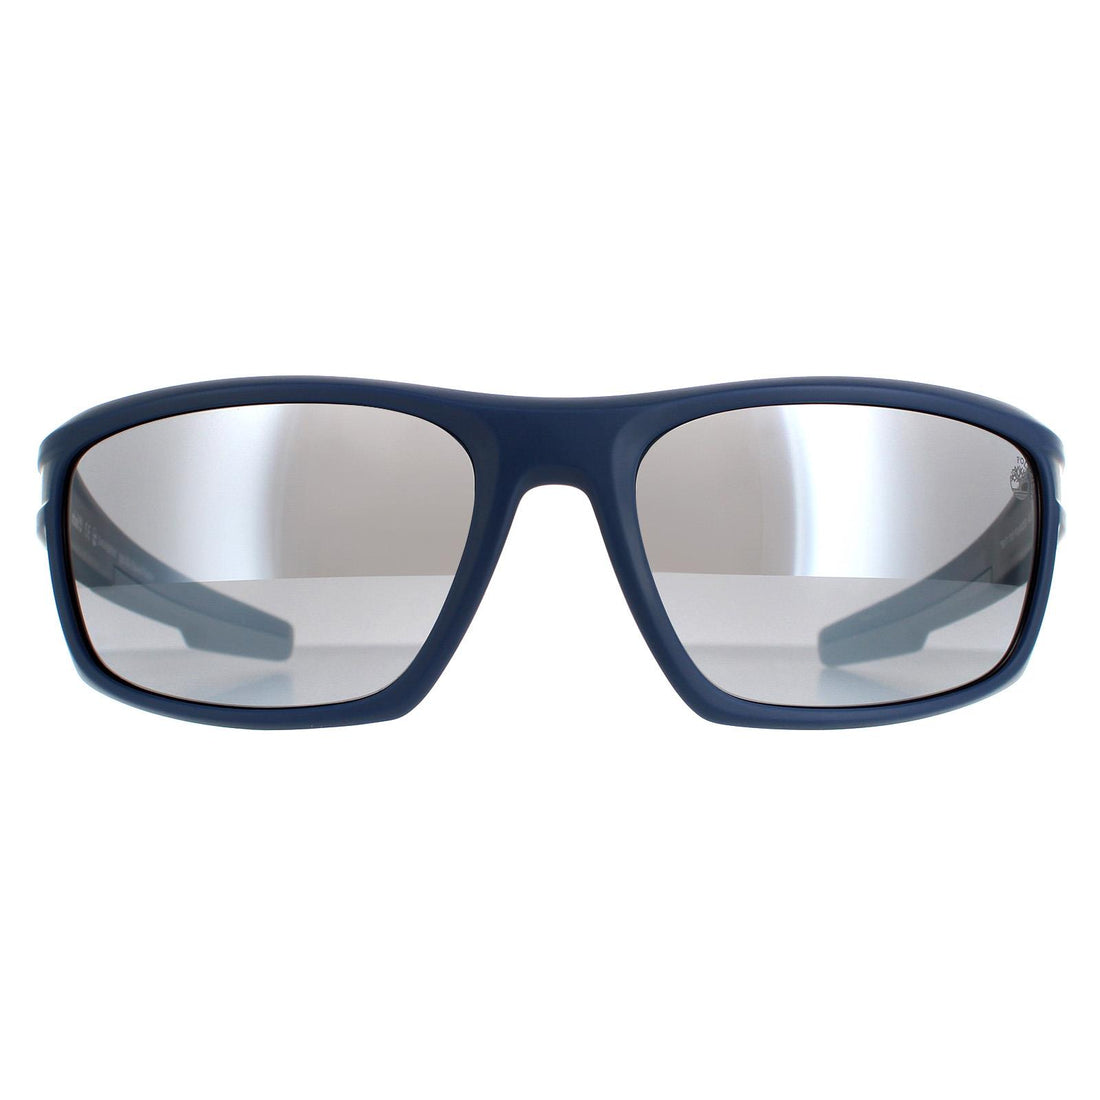 Timberland TB9171 Sunglasses Matte Blue / Grey Polarized